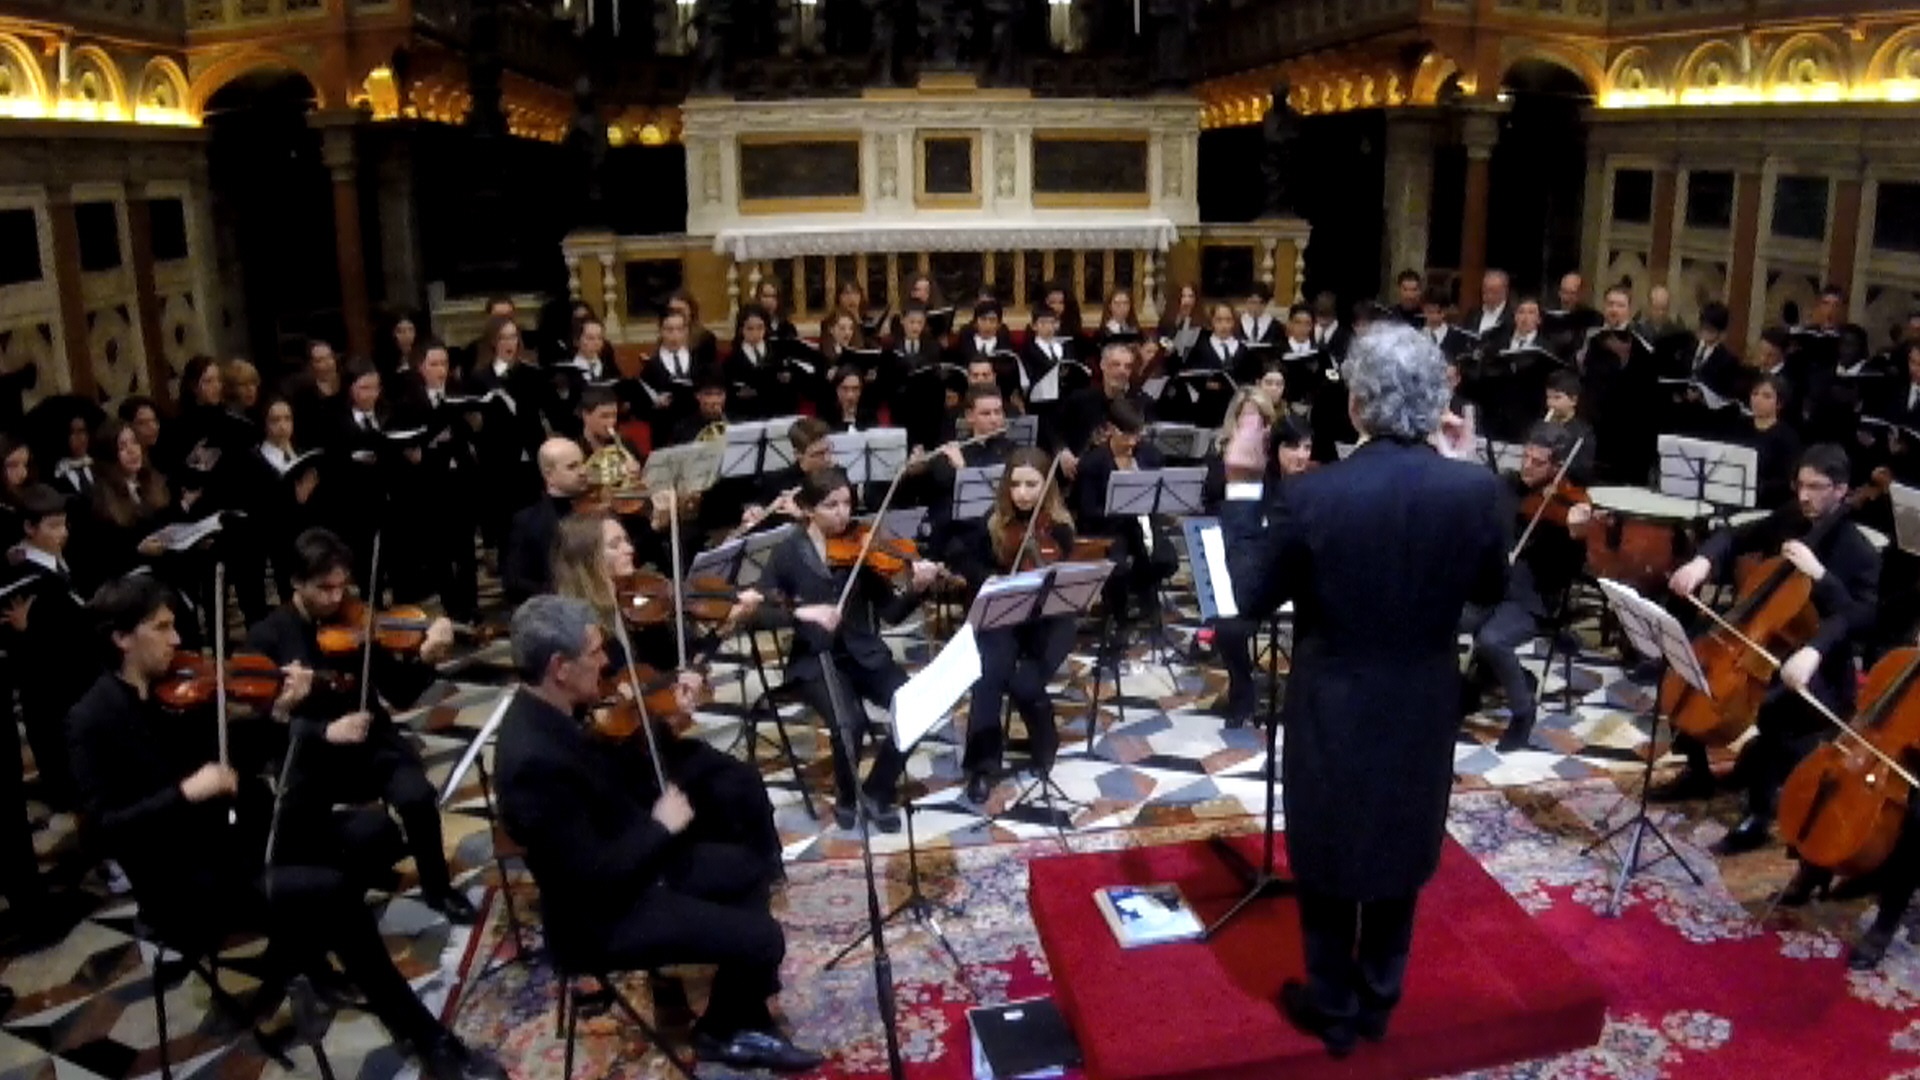 Concerto per i 1600 anni di Venezia-Coro Pueri Cantores del Veneto